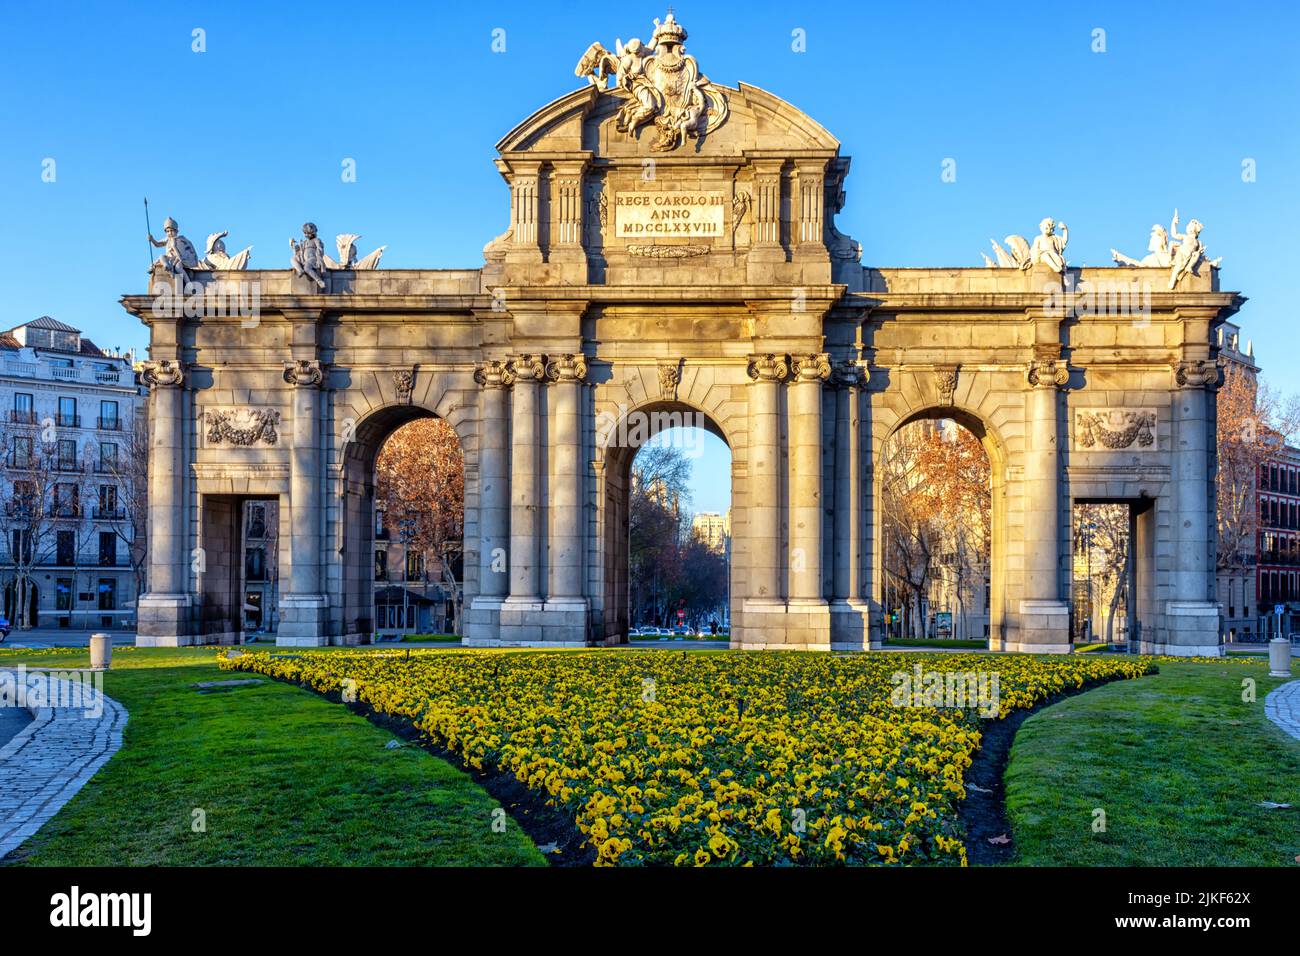 Puerta de Alcalá en la Plaza de la Independencia, Madrid, España Stock Photo